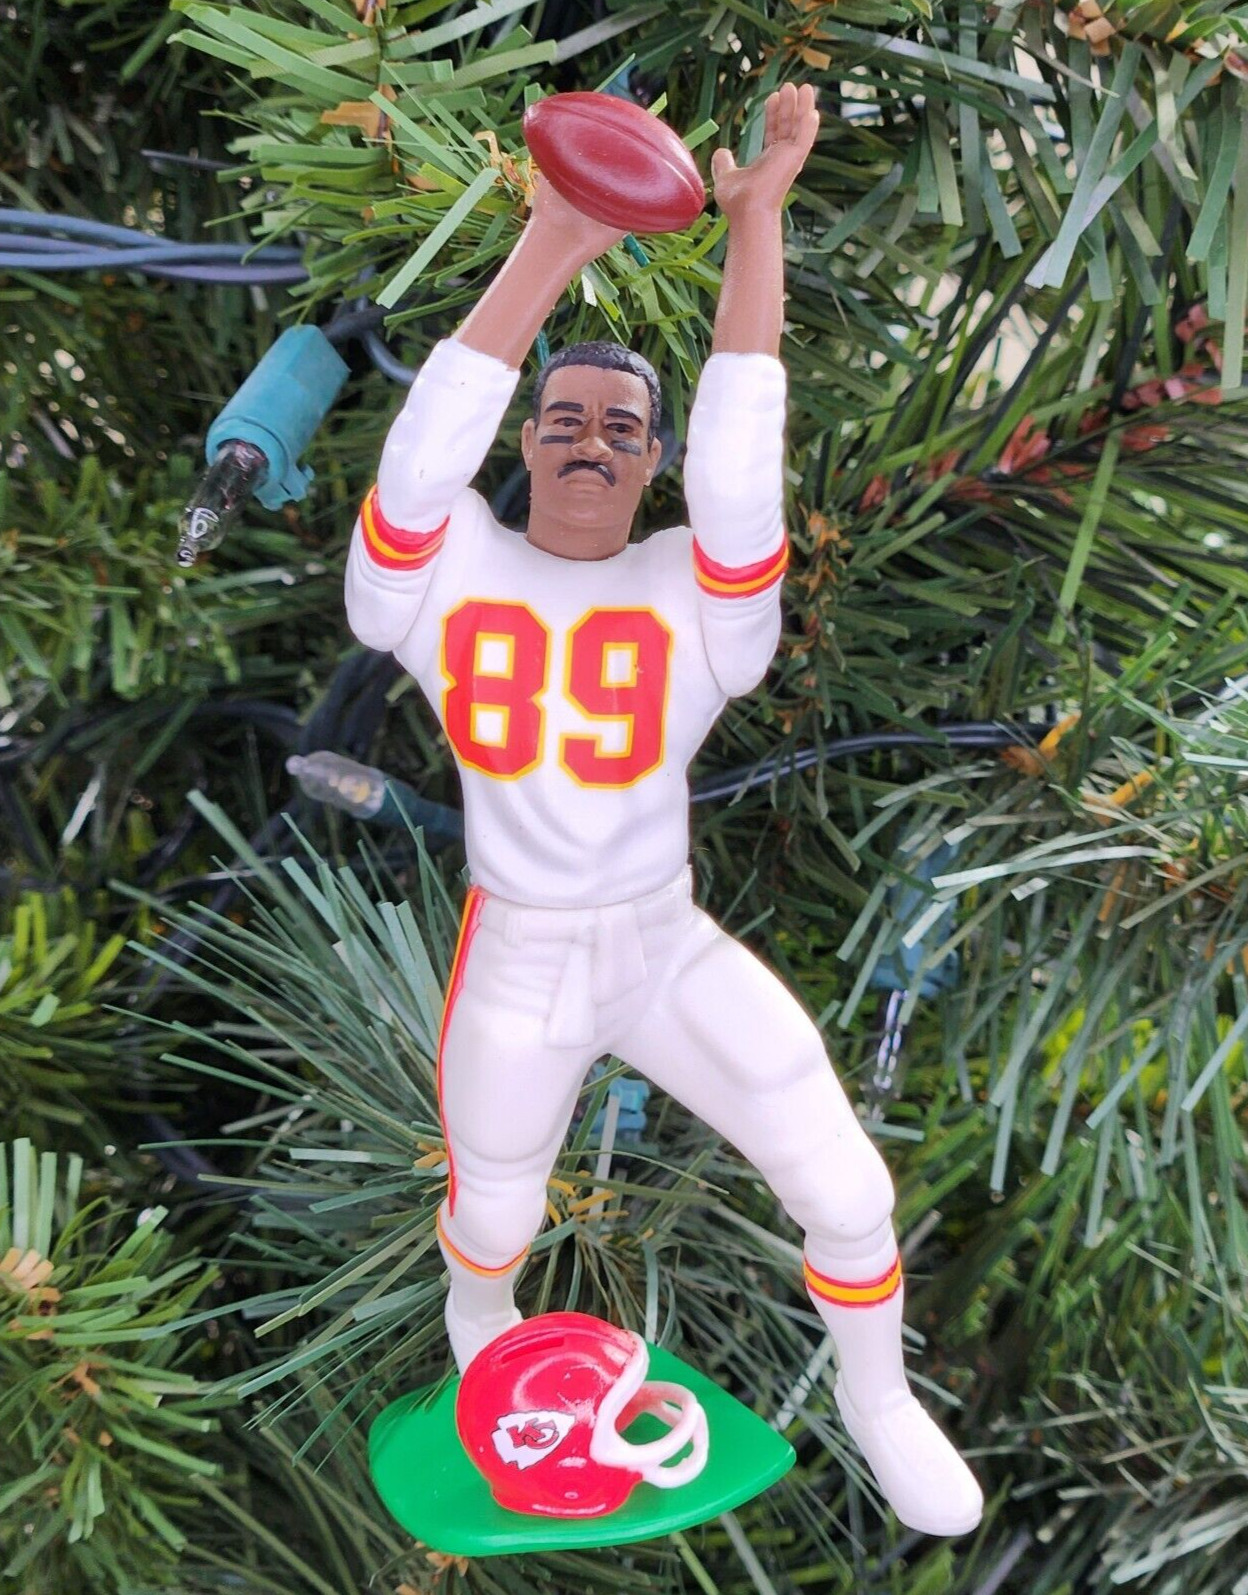 Andre Rison Kansas City Chief Football NFL Xmas Ornament Holiday Tree vtg Jersey